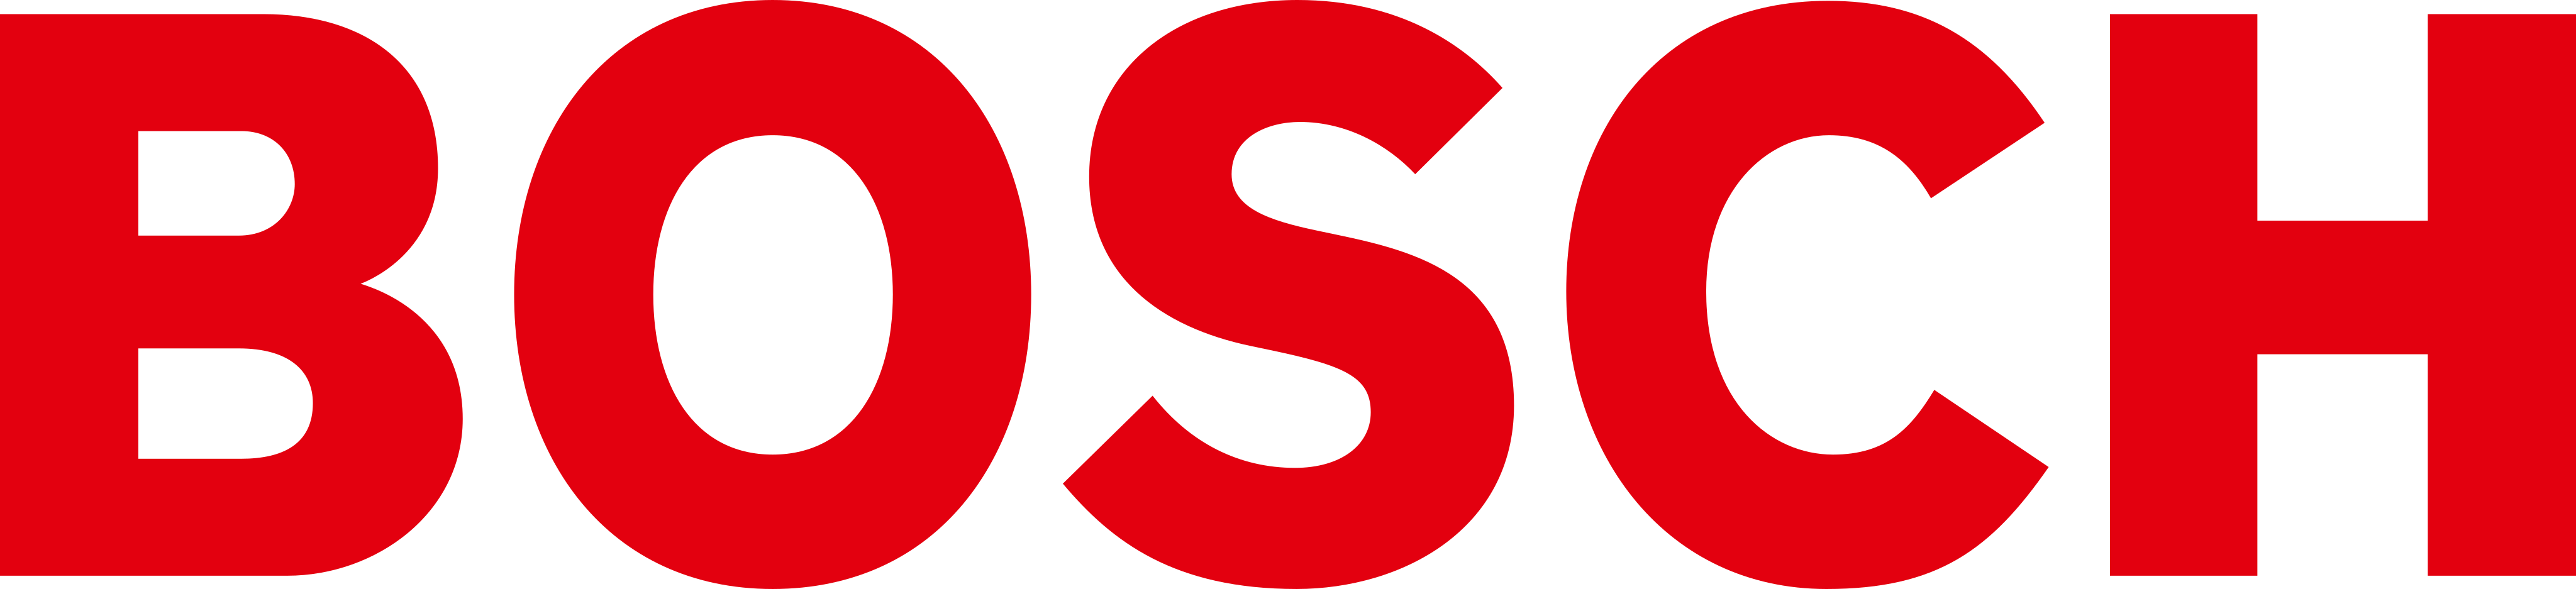 Bosch Logo.